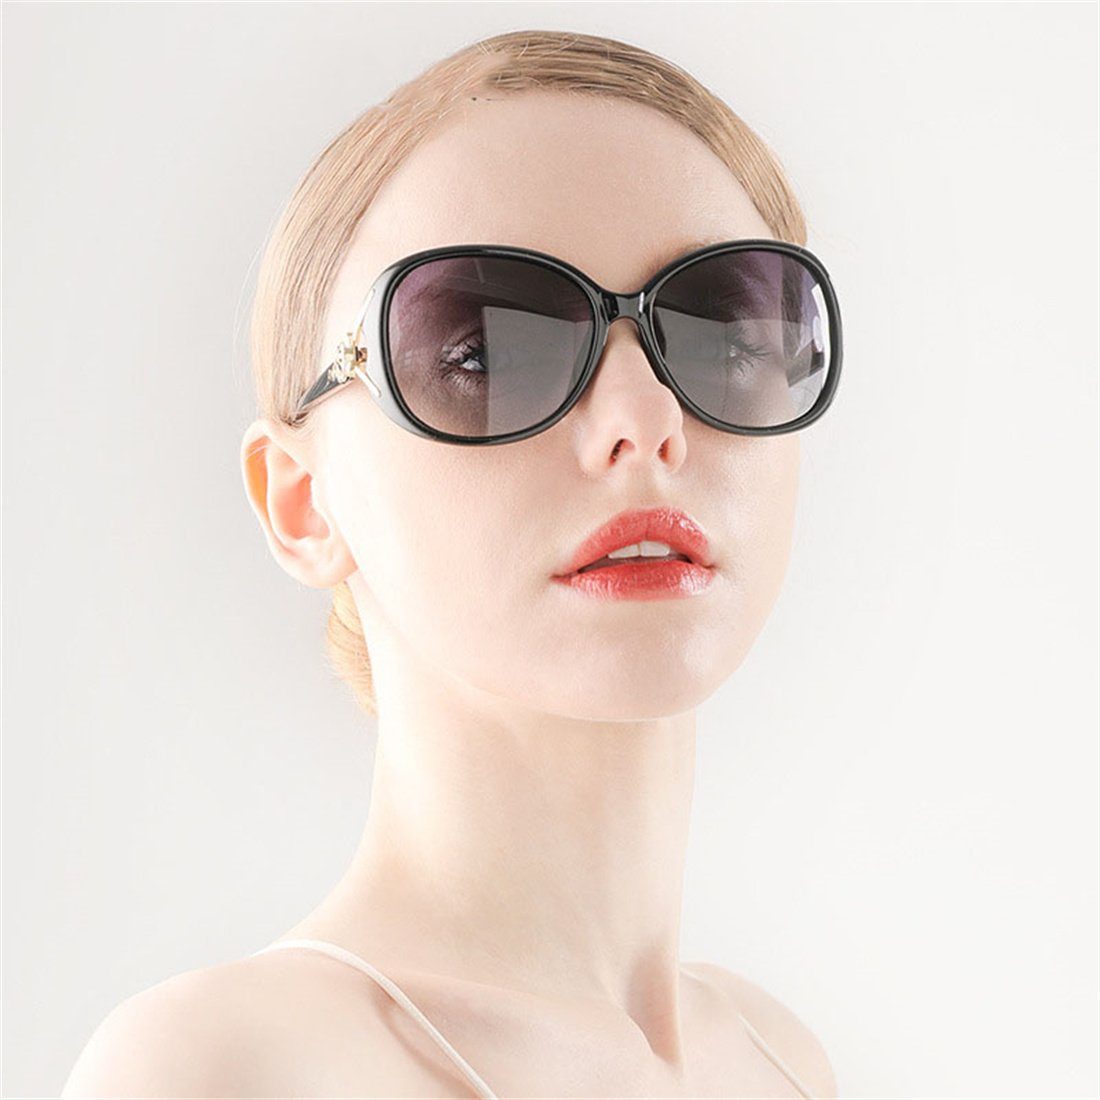 DÖRÖY Schwarz Outdoor-Sonnenbrille Polarisierende Sonnenbrille Damen-Sommer-Sonnenbrille,